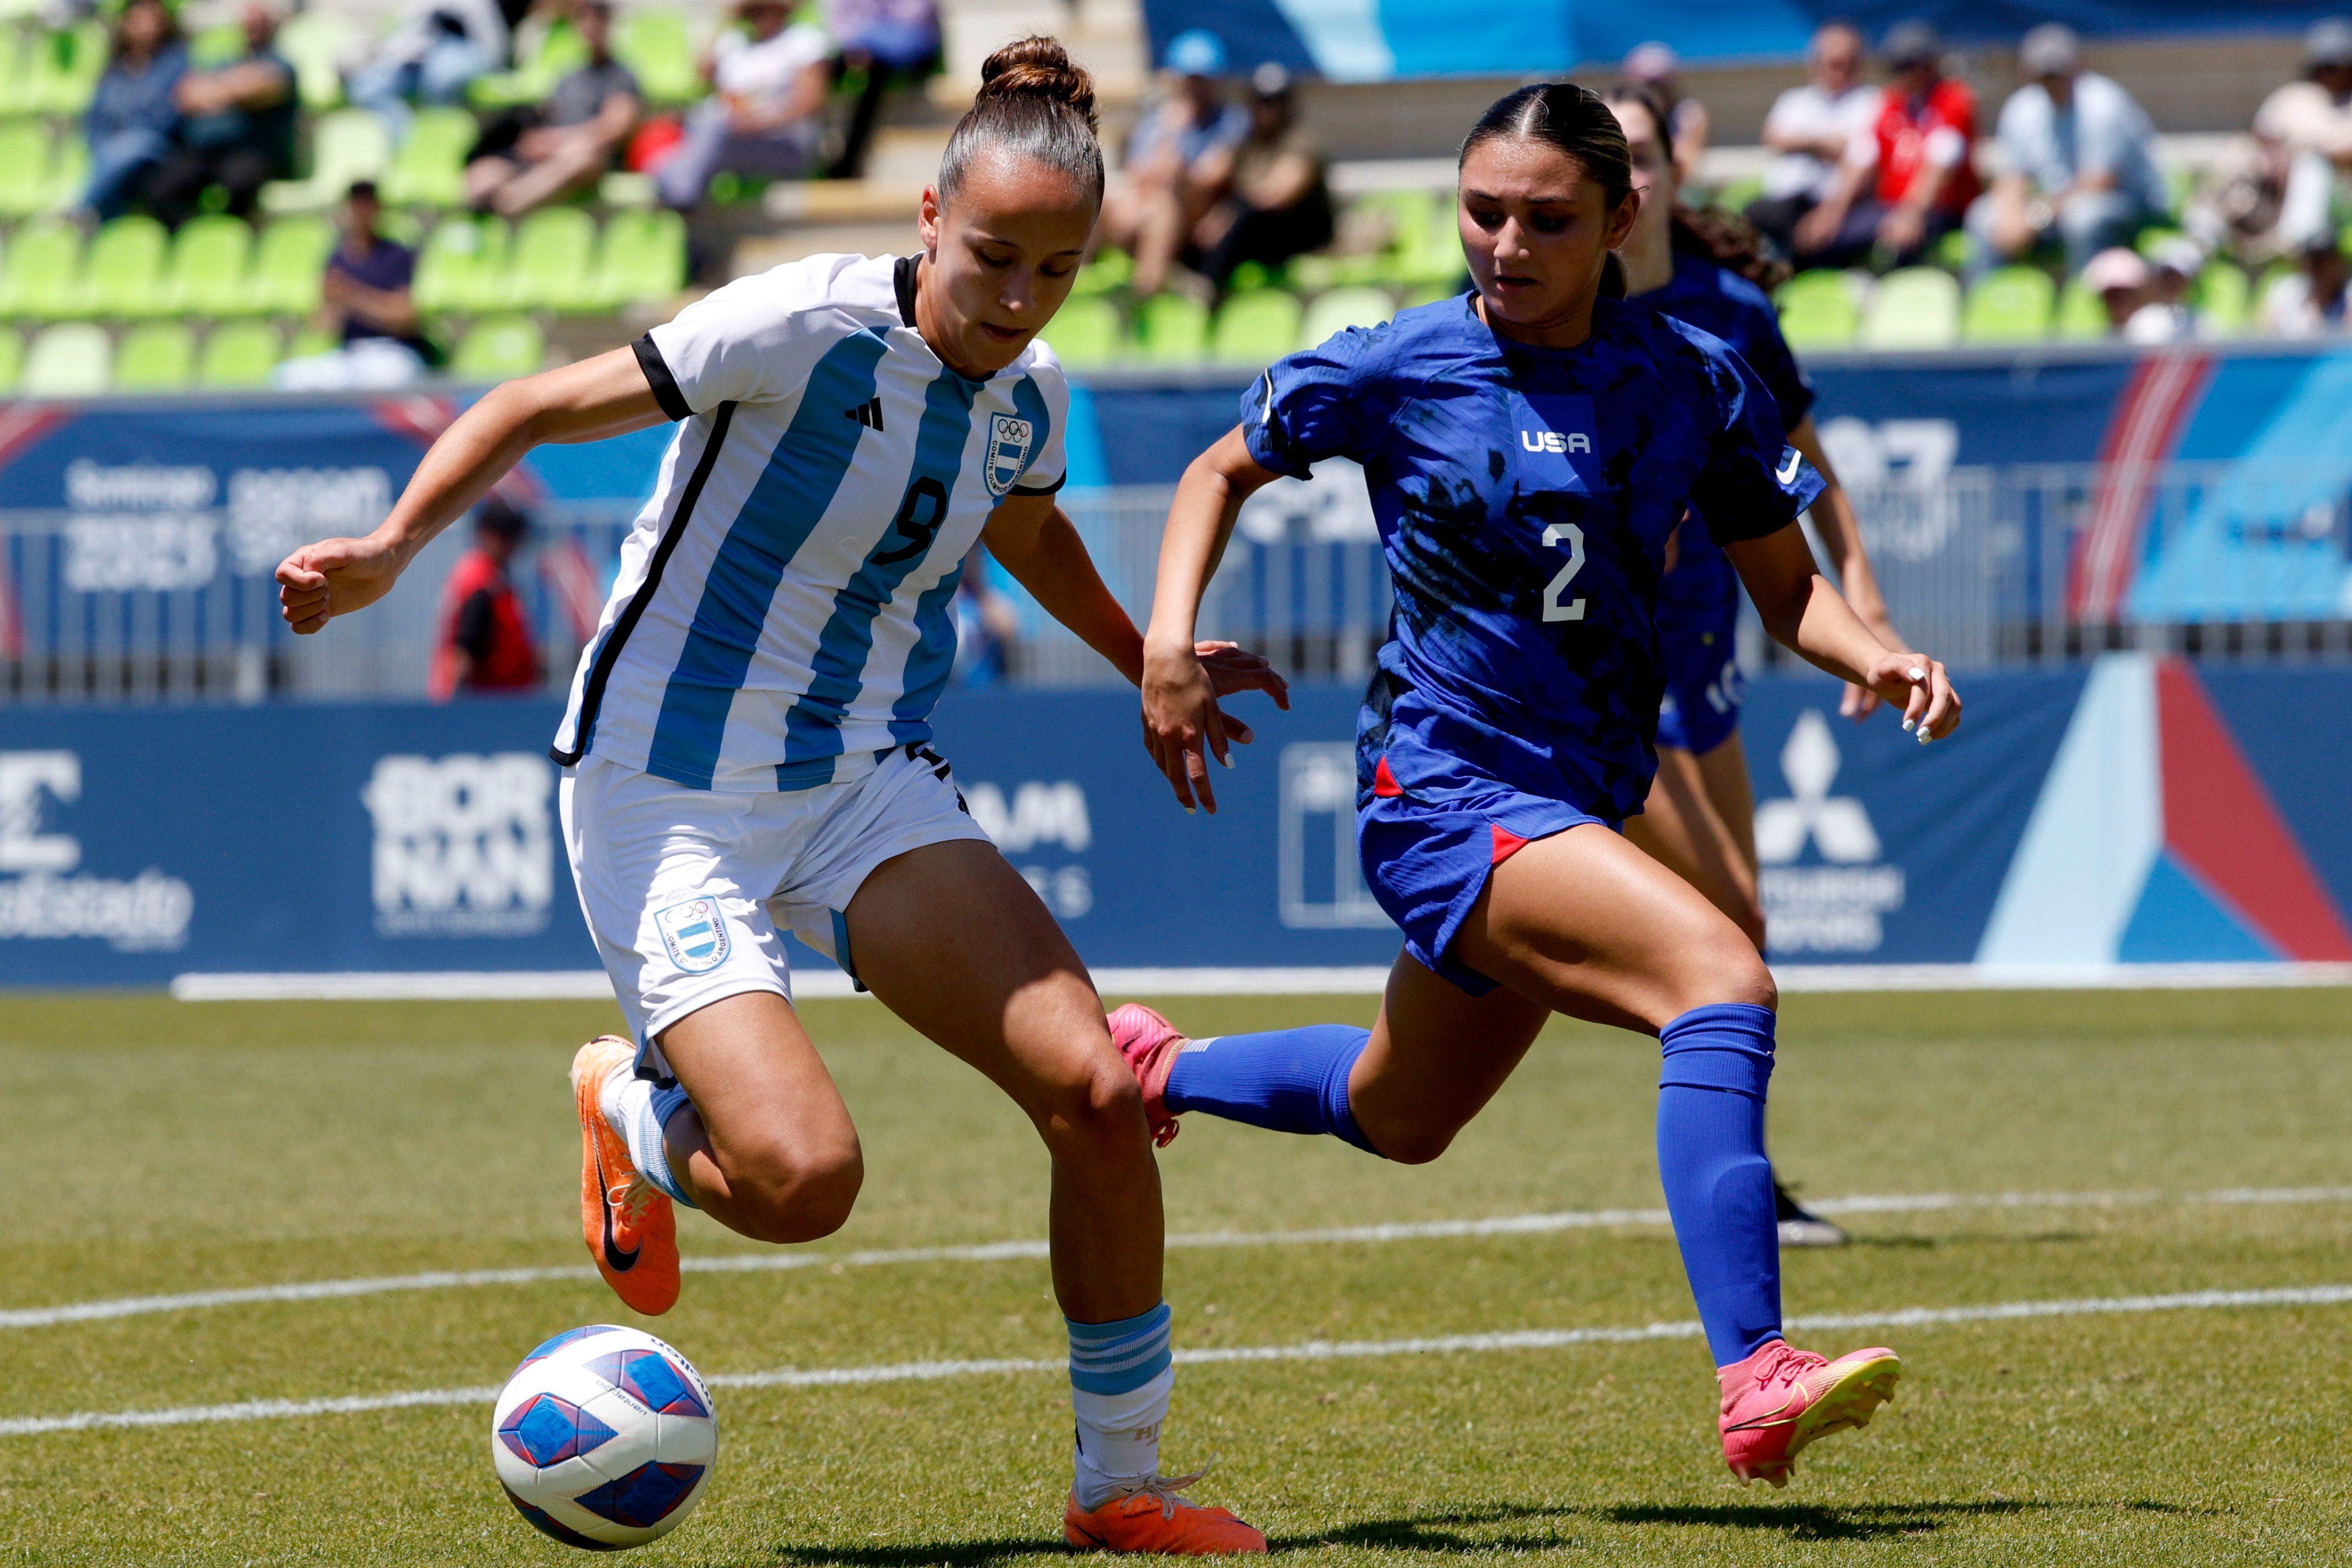 Panamericanos: La Selección Femenina quedó cuarta y no estará en París 2024 | Canal Showsport